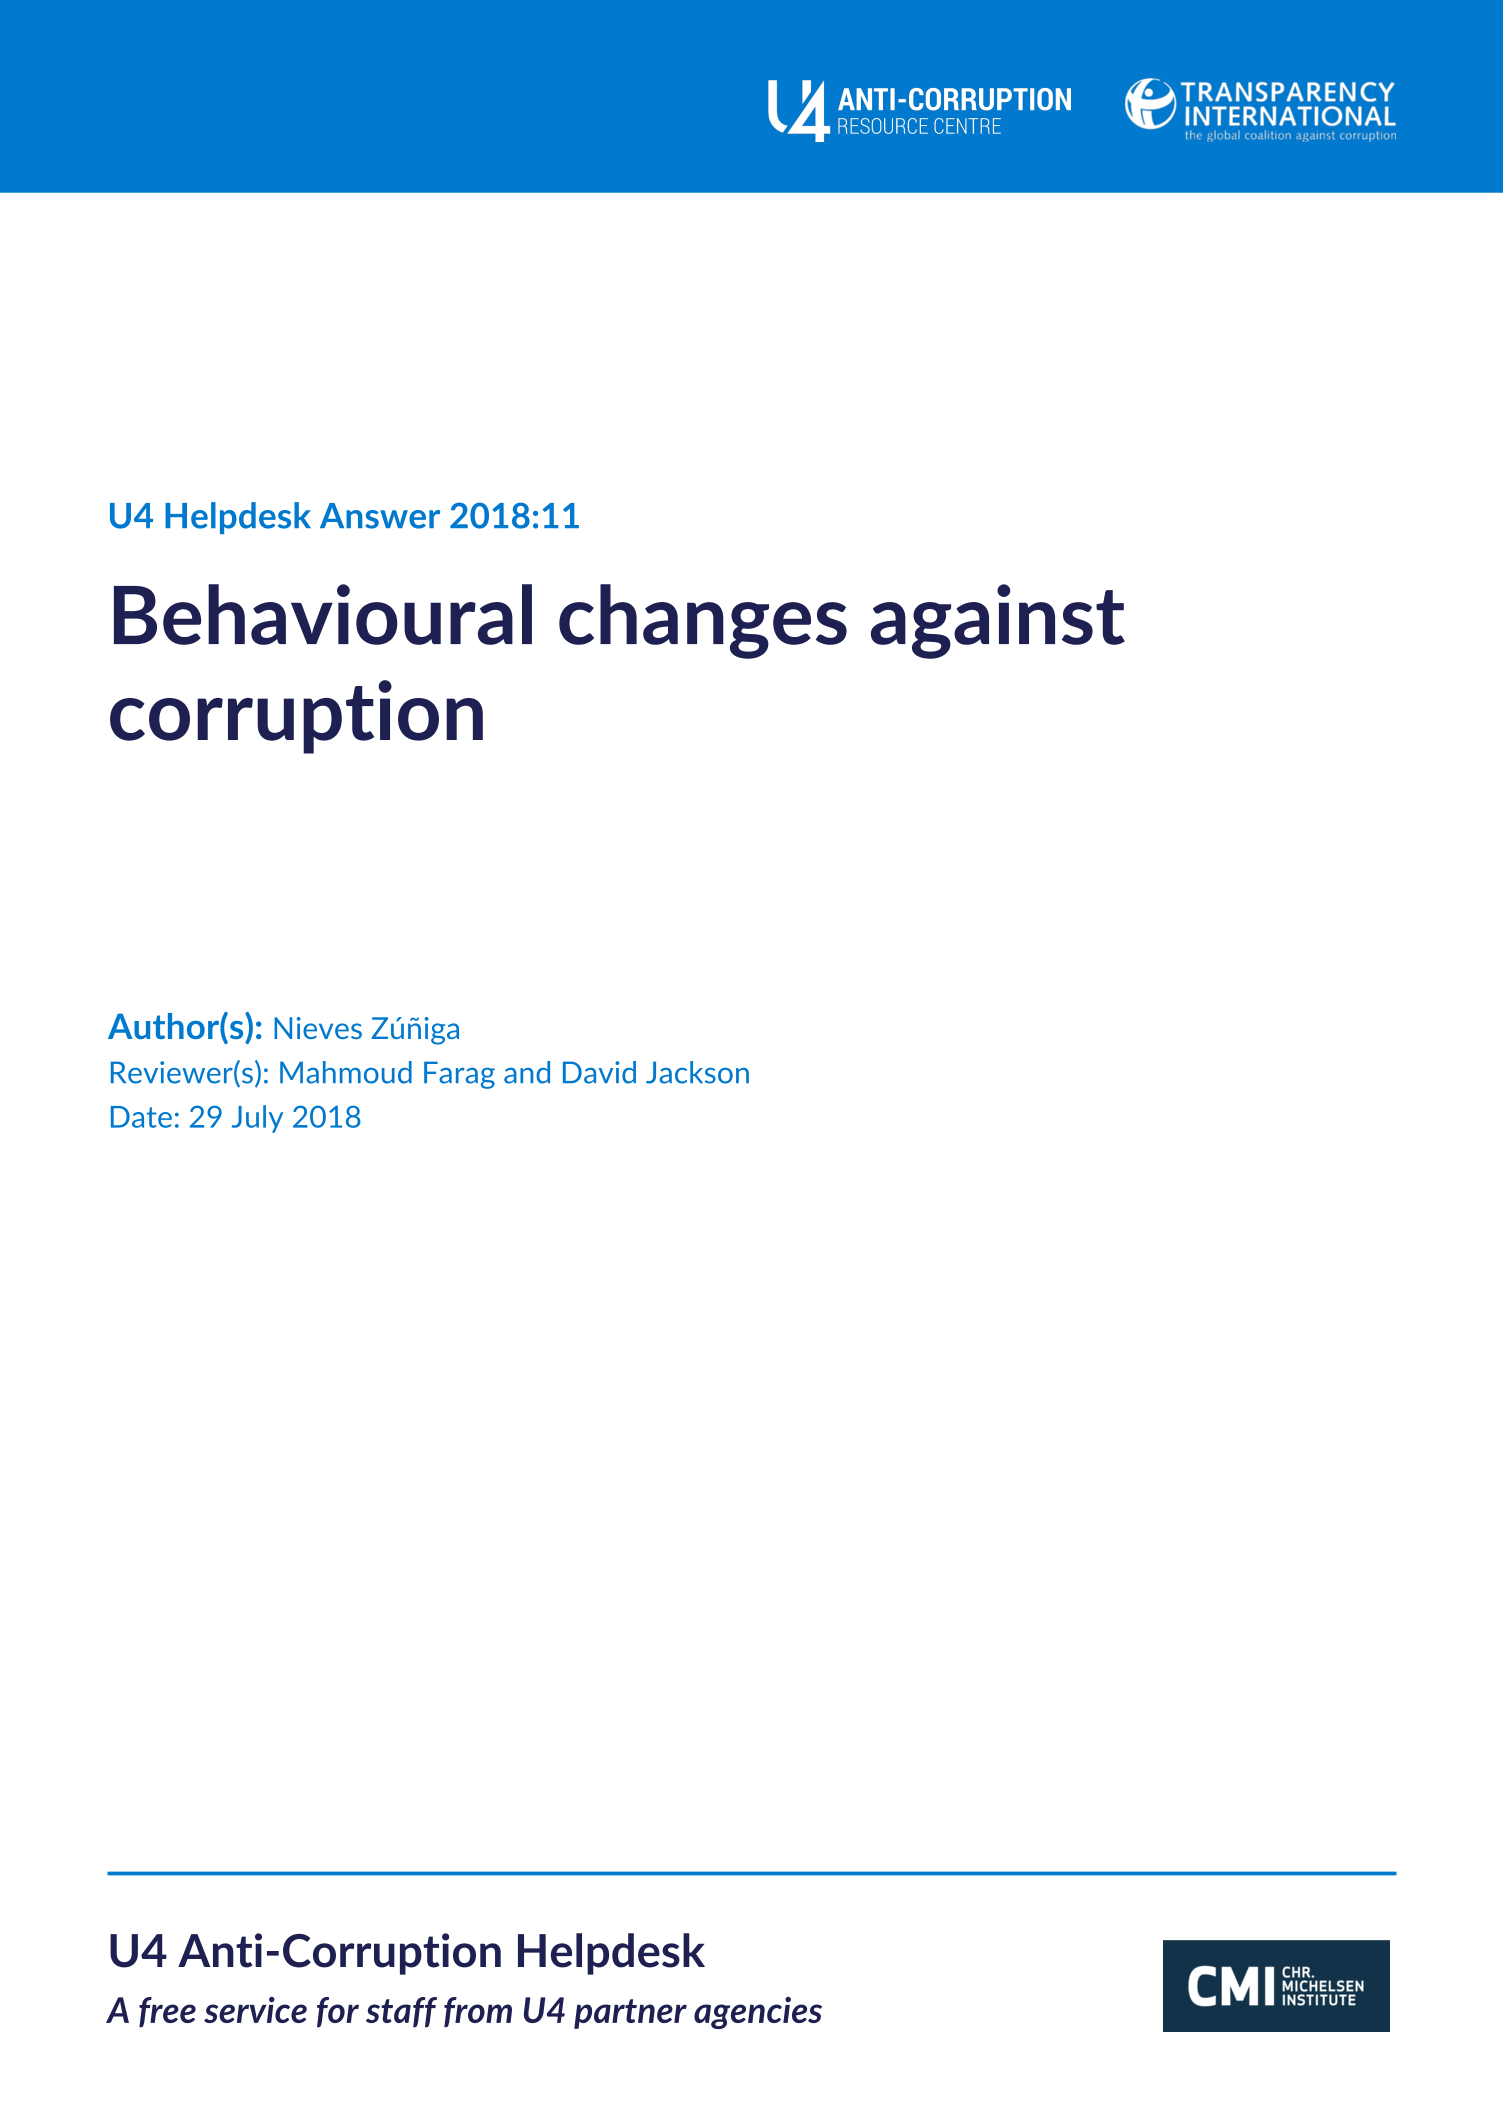 Behavioural changes against corruption